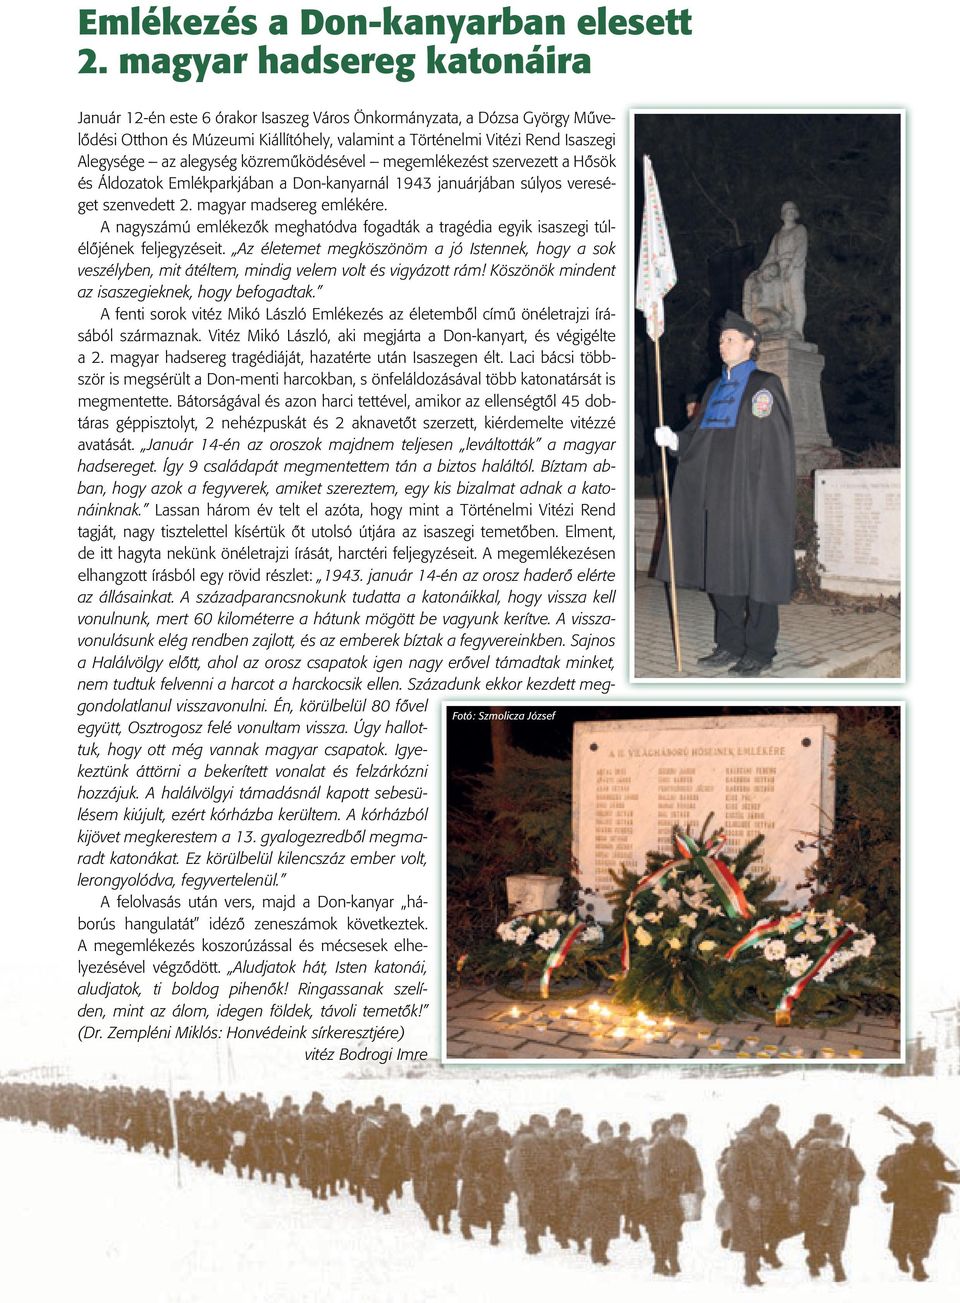 alegység közremûködésével megemlékezést szervezett a Hôsök és Áldozatok Emlékparkjában a Don-kanyarnál 1943 januárjában súlyos vereséget szenvedett 2. magyar madsereg emlékére.